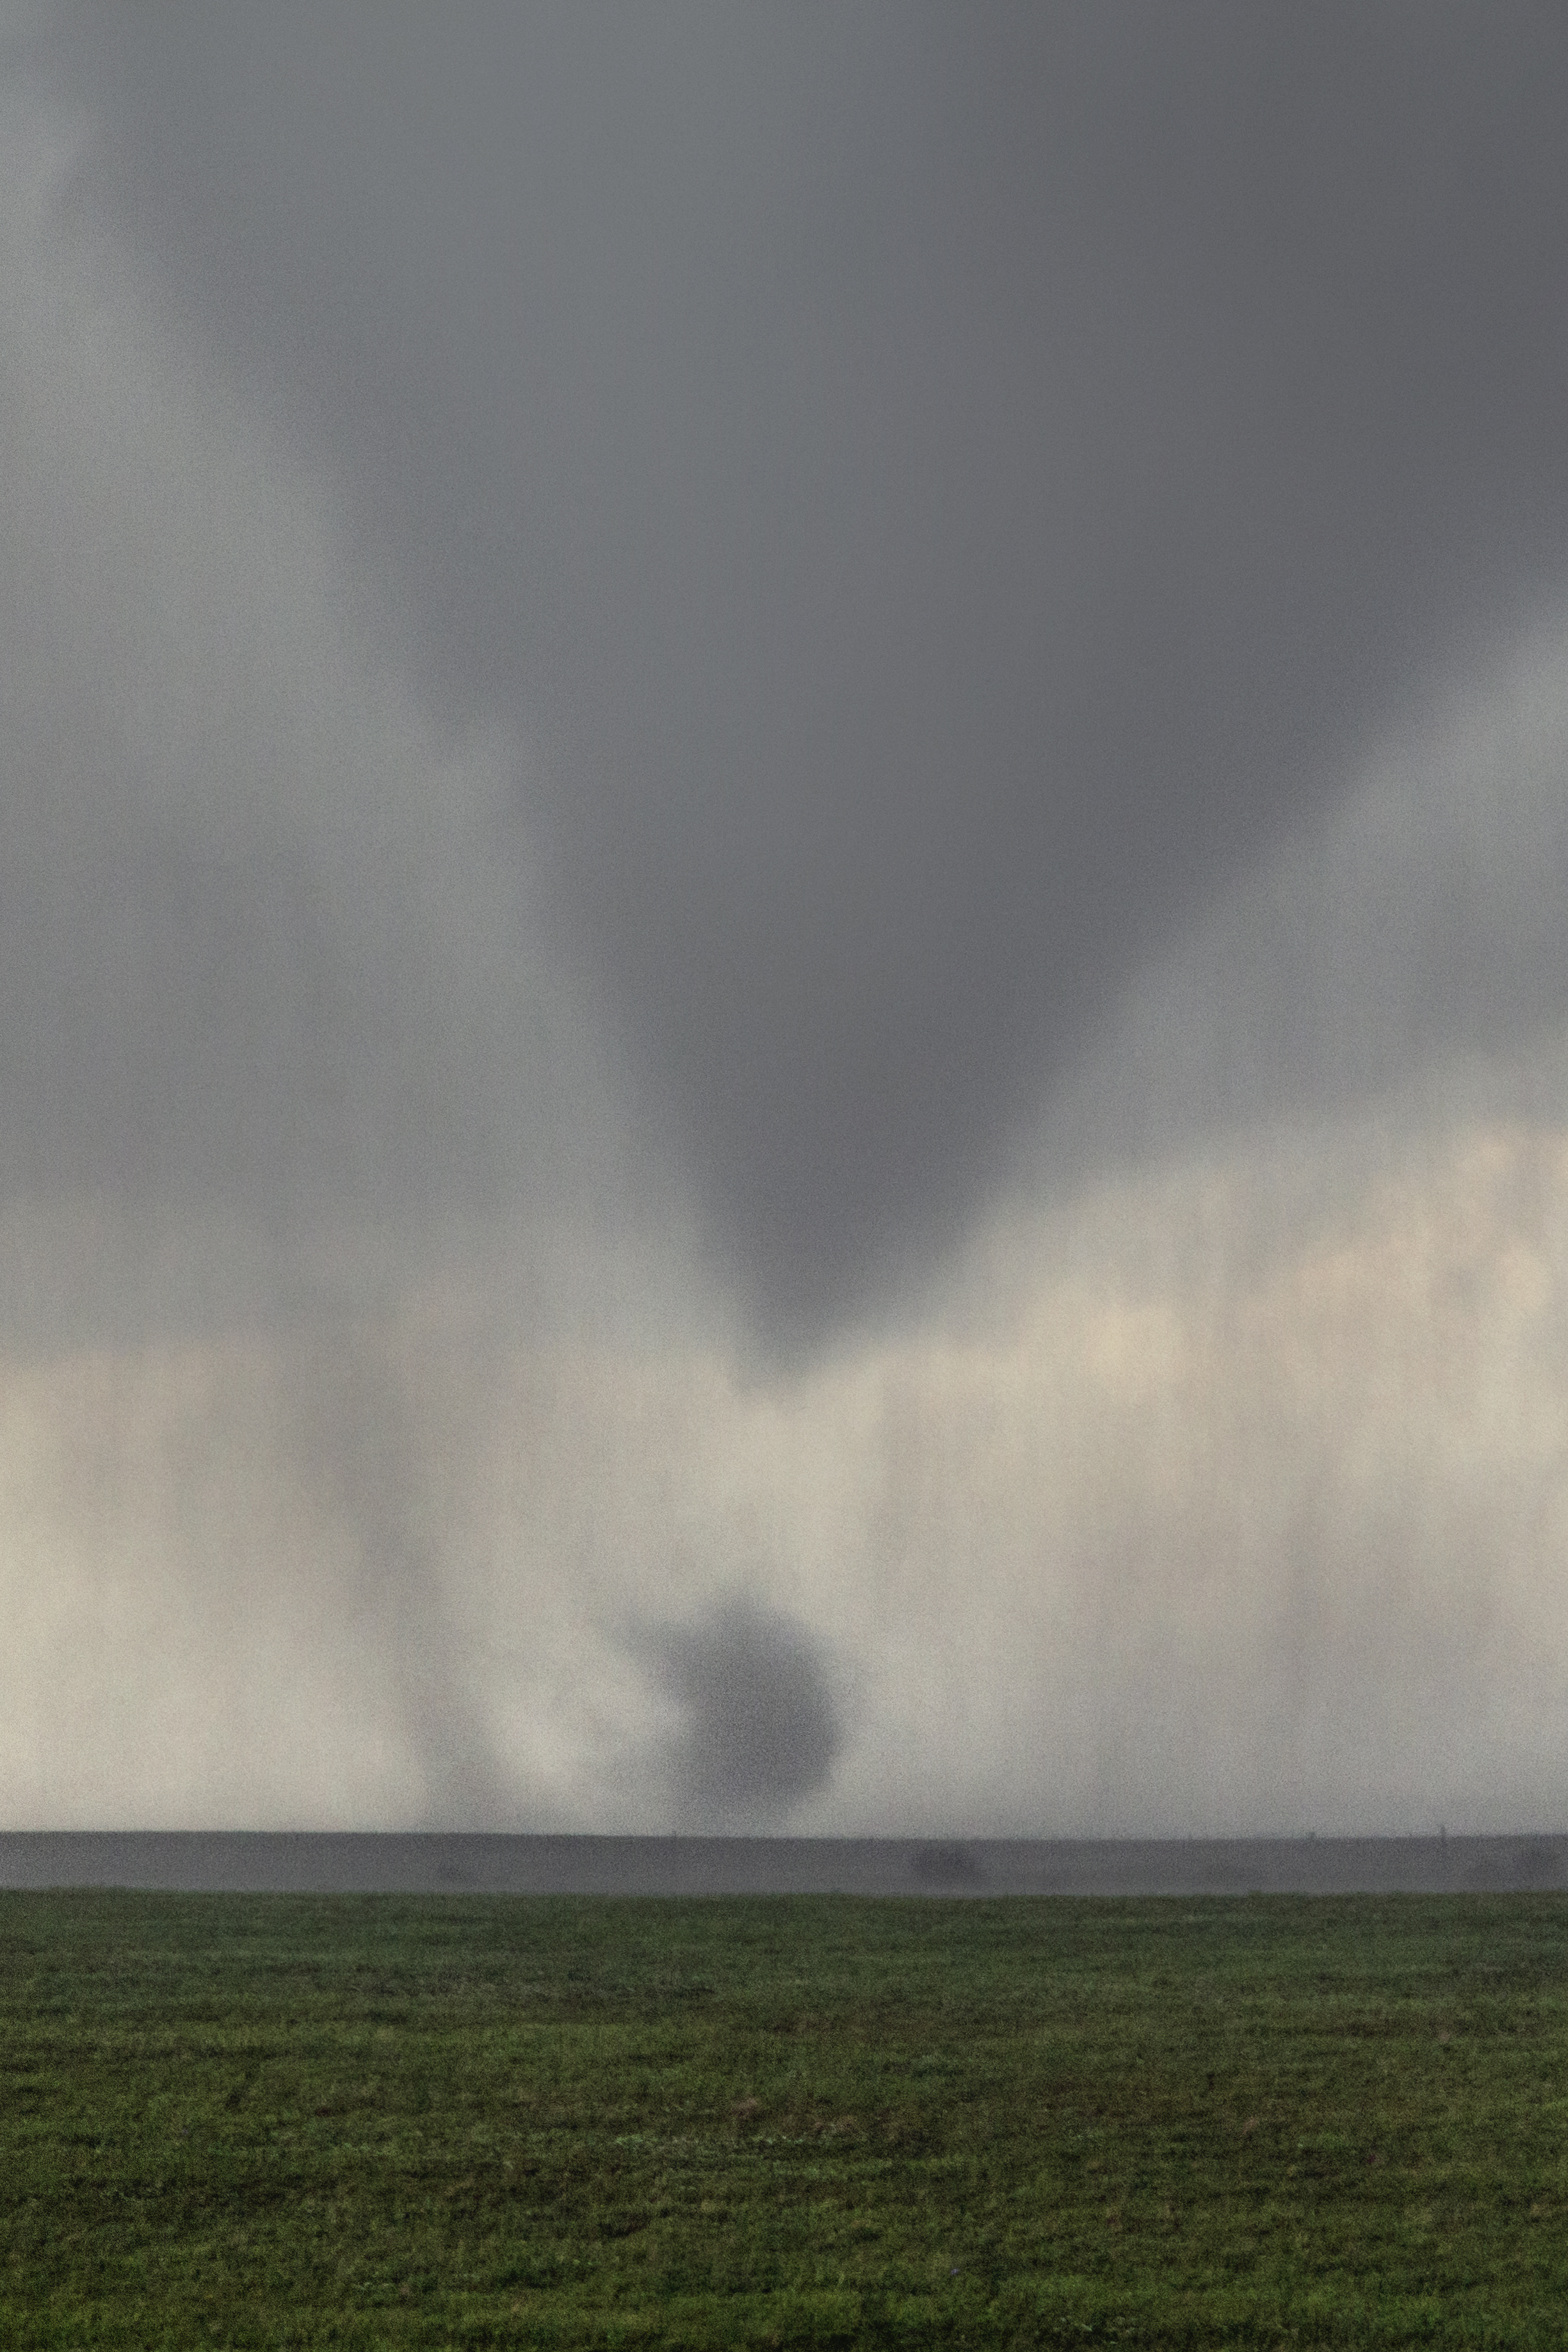  Tornado forming in a field near Bennington, Kansas on May 28, 2013 